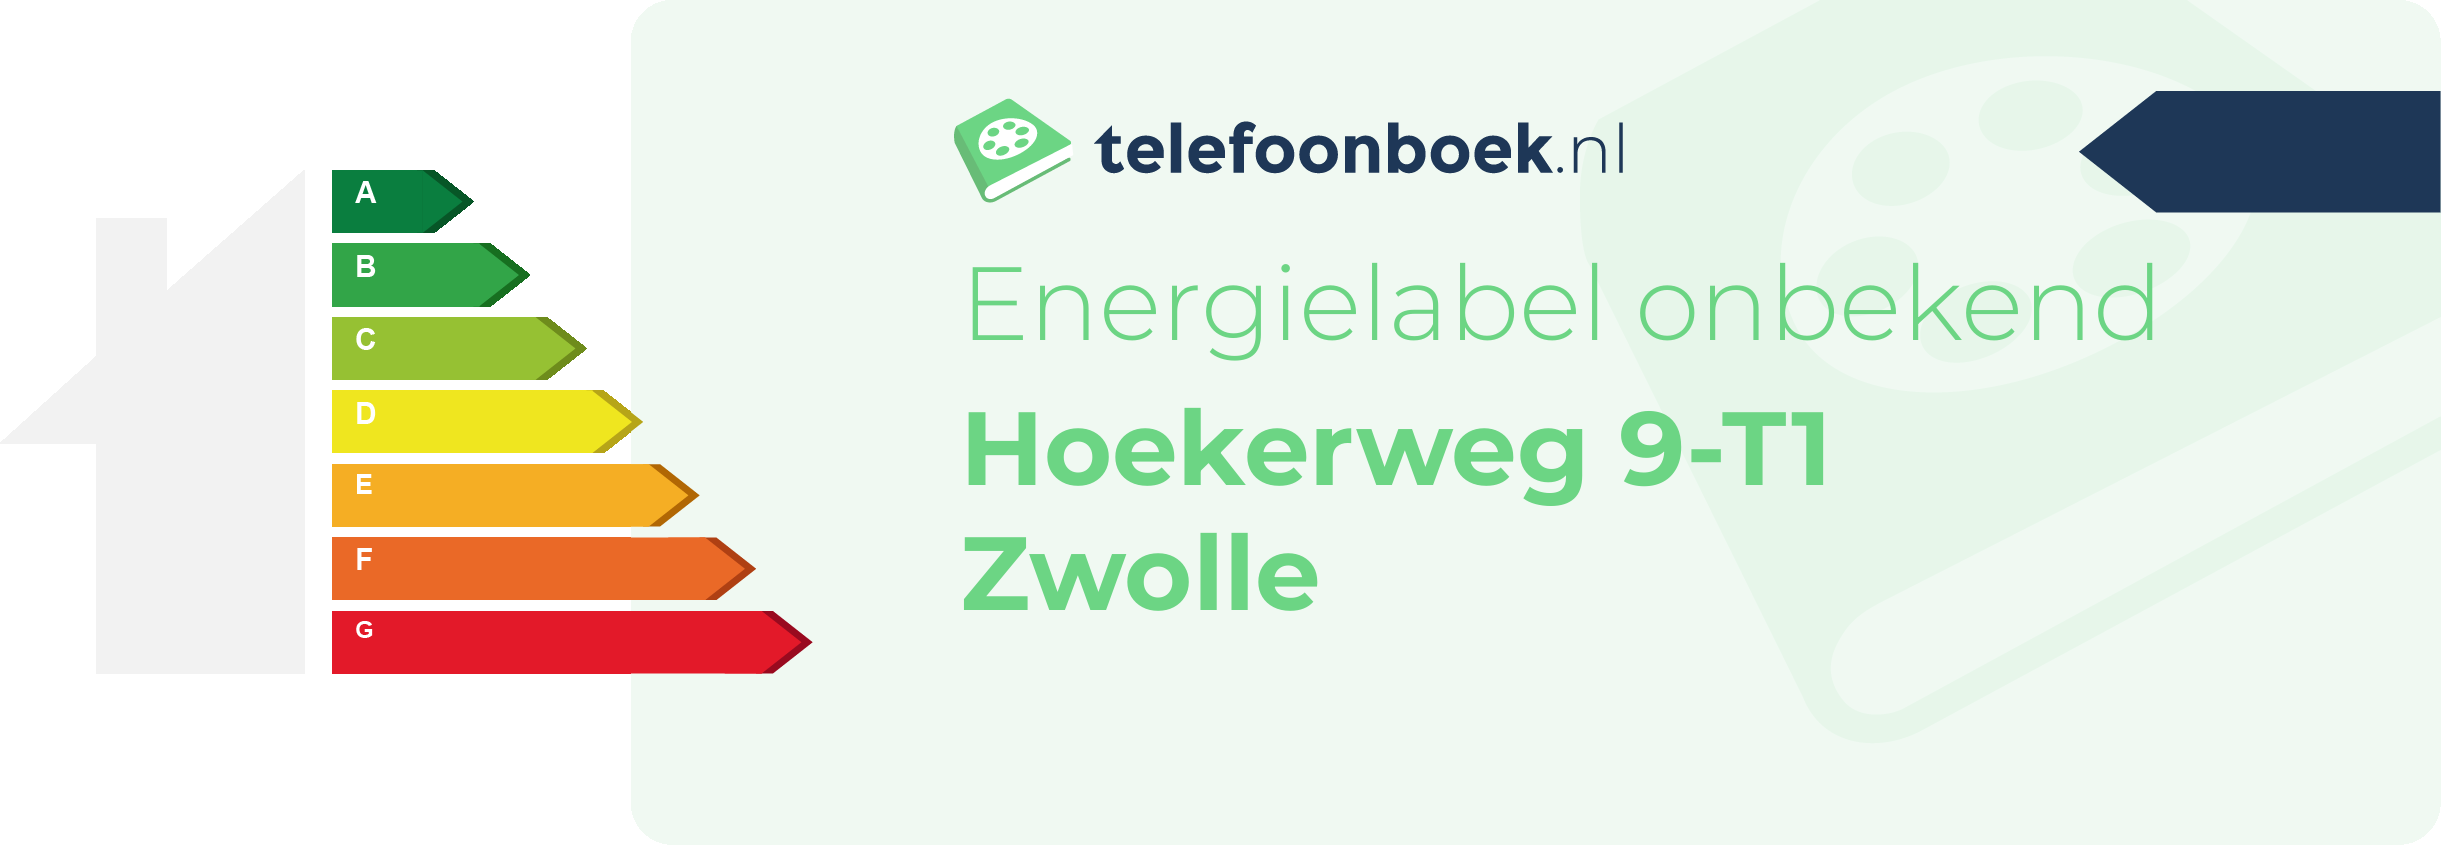 Energielabel Hoekerweg 9-T1 Zwolle